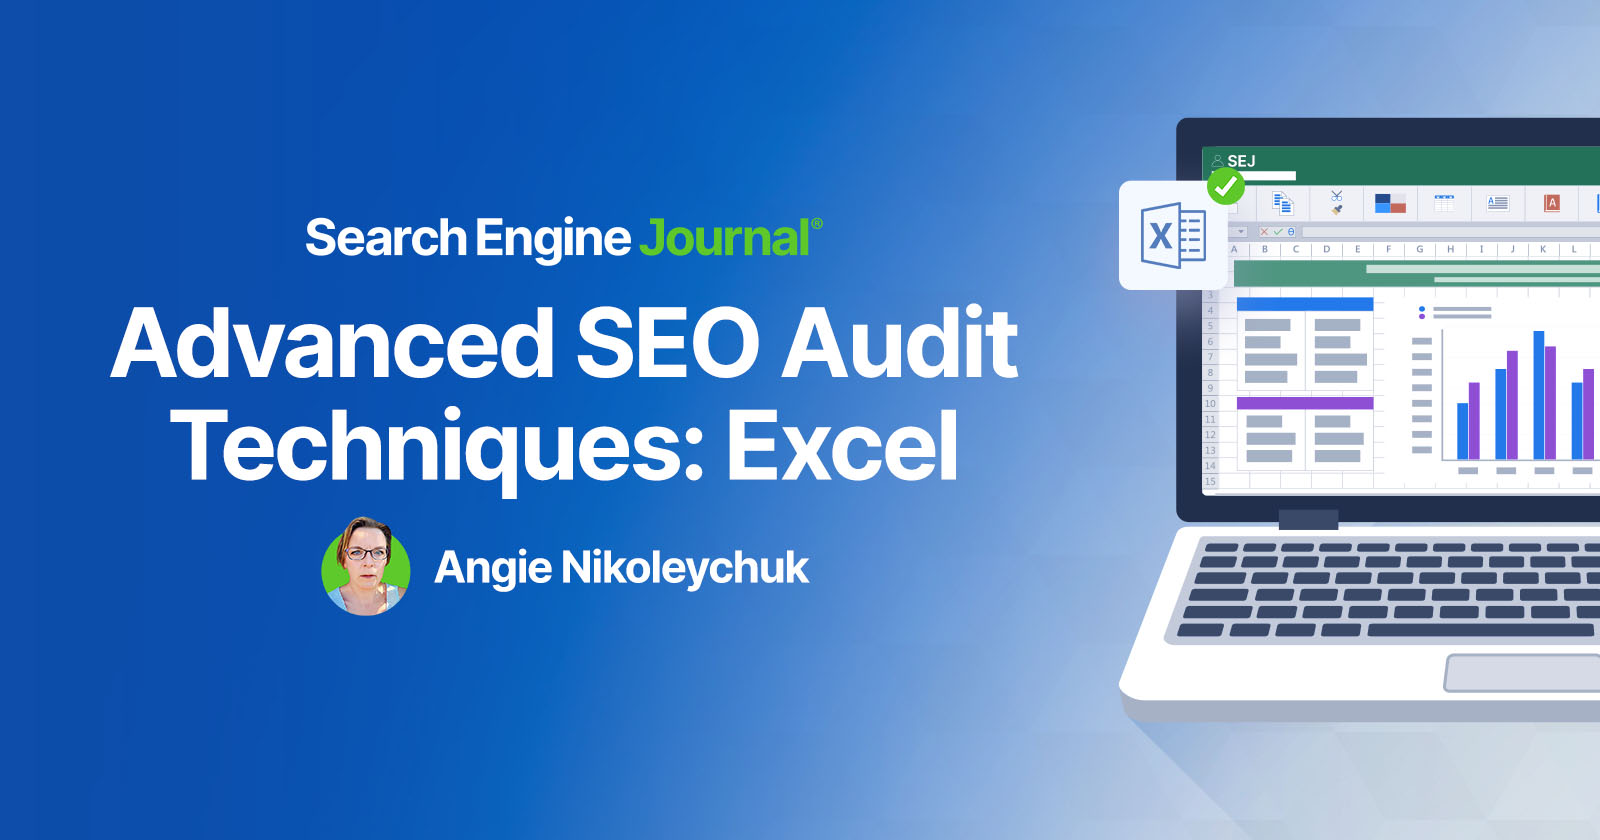 Advanced SEO Audit Techniques: Excel via @sejournal, @Juxtacognition